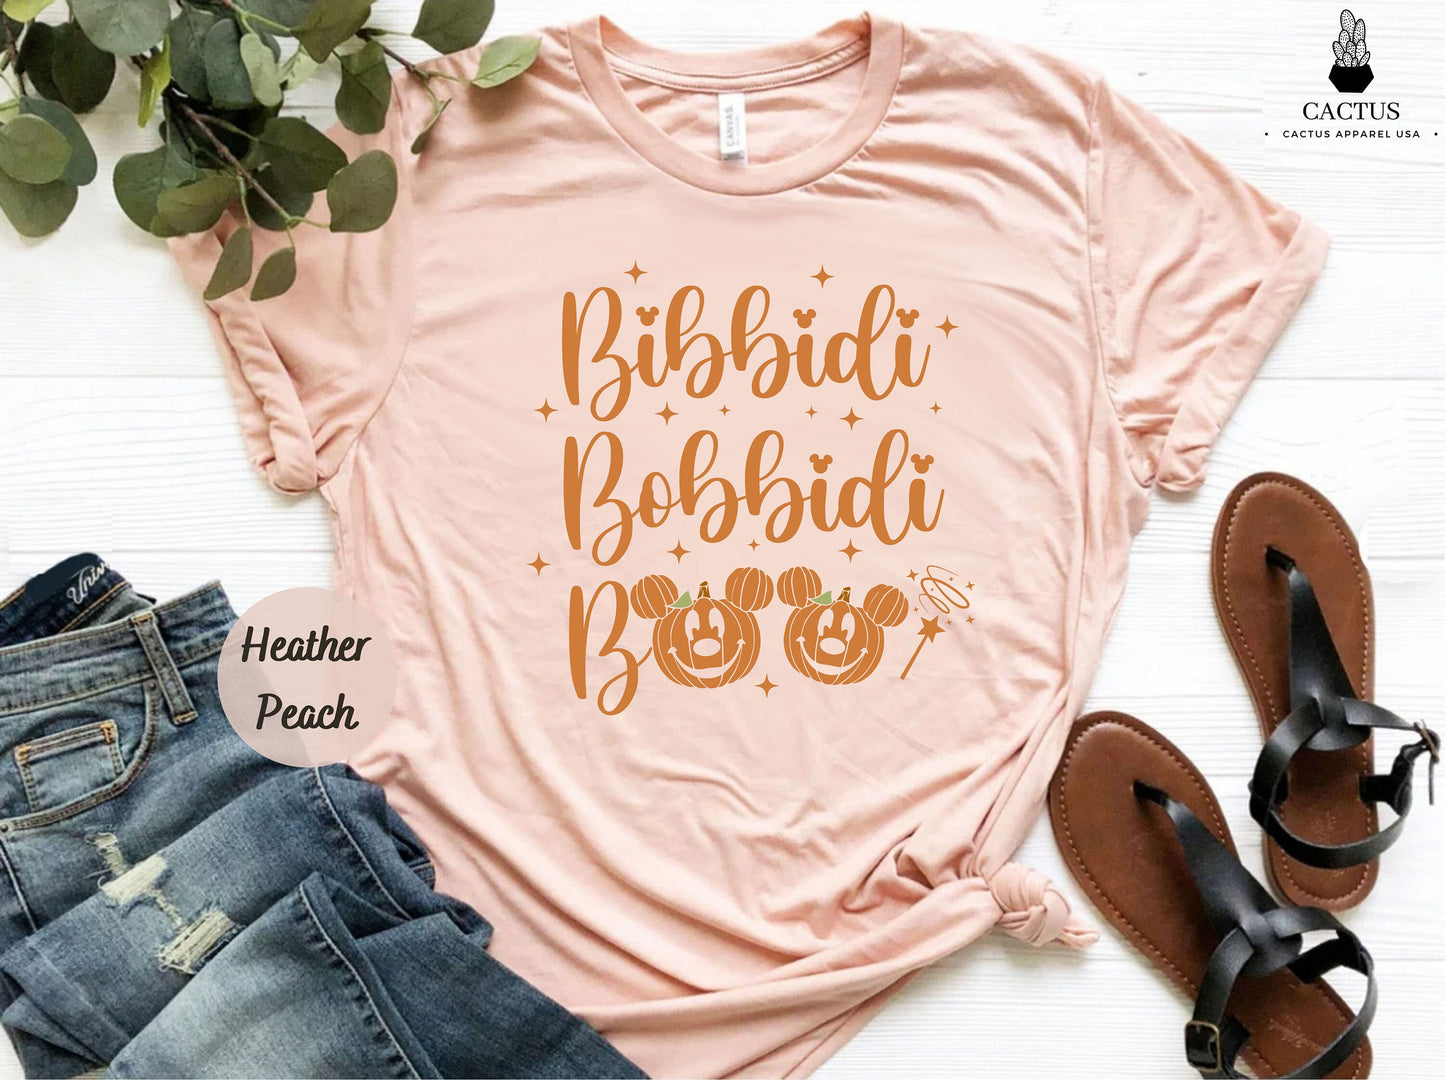 Bibbidi Bobbidi Boo Shirt, Disney Halloween Matching Shirt, Cinderella Shirt, Disney Halloween, Disney Vacation Shirts, Cute Disney Shirts